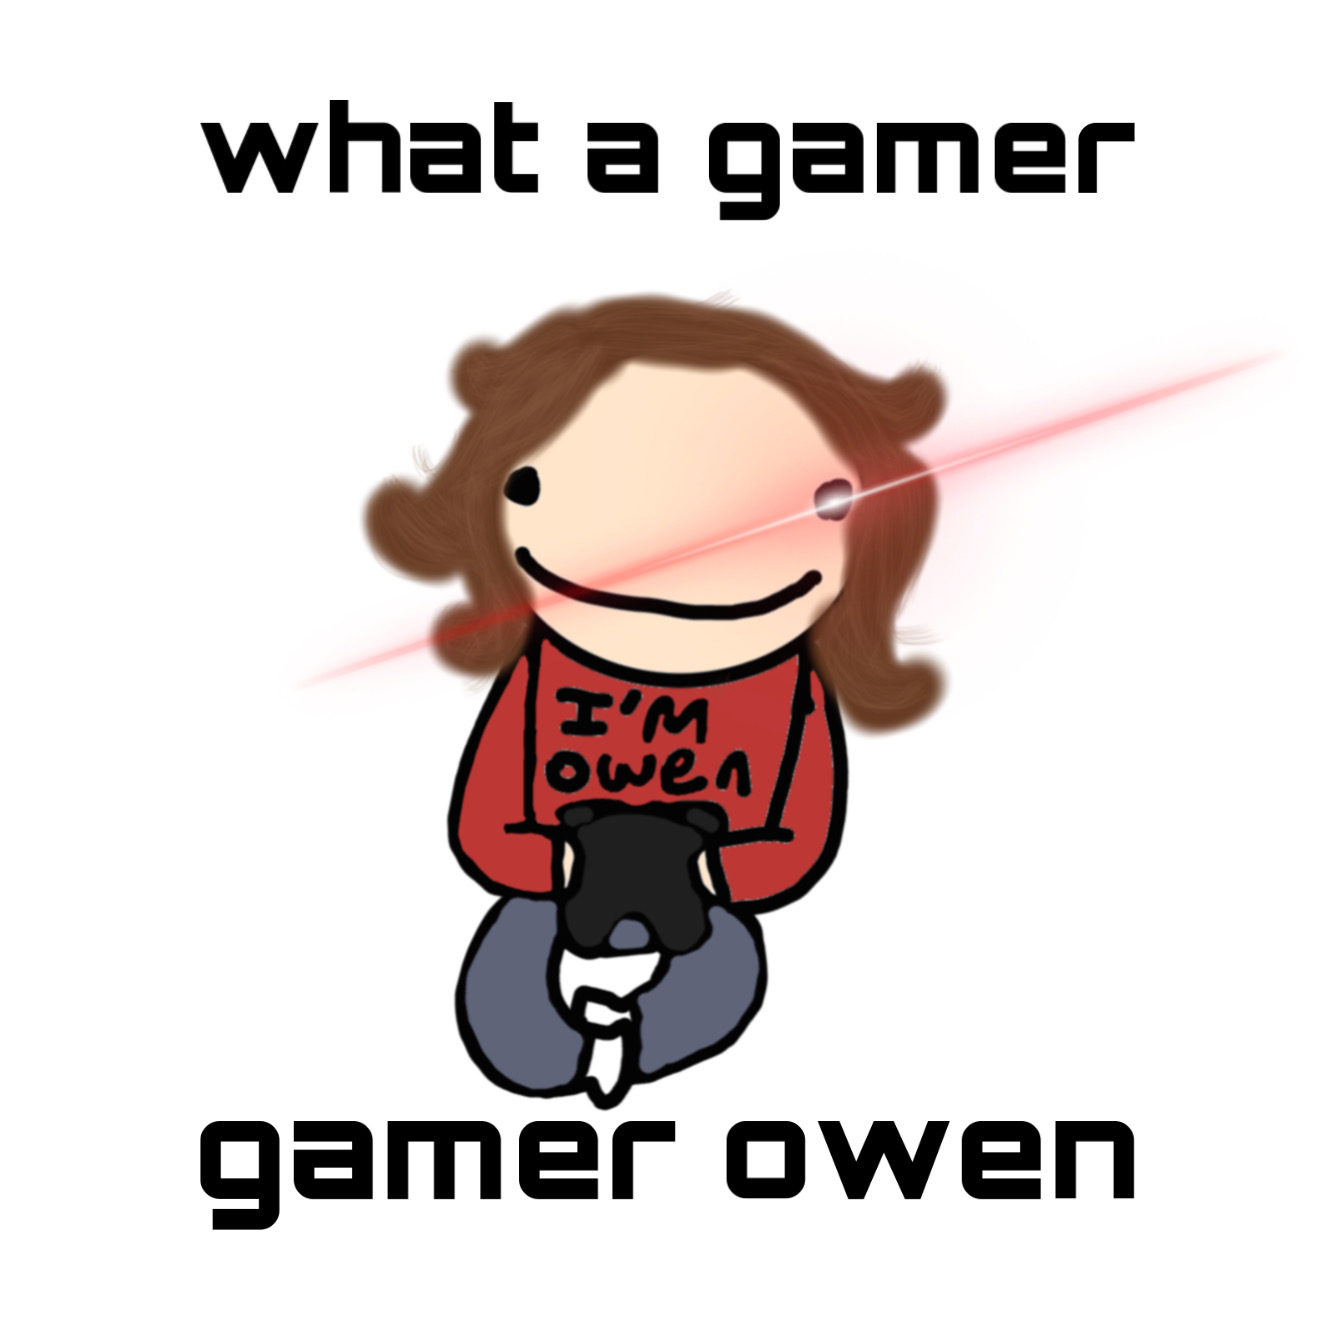 fake gamer girl meme